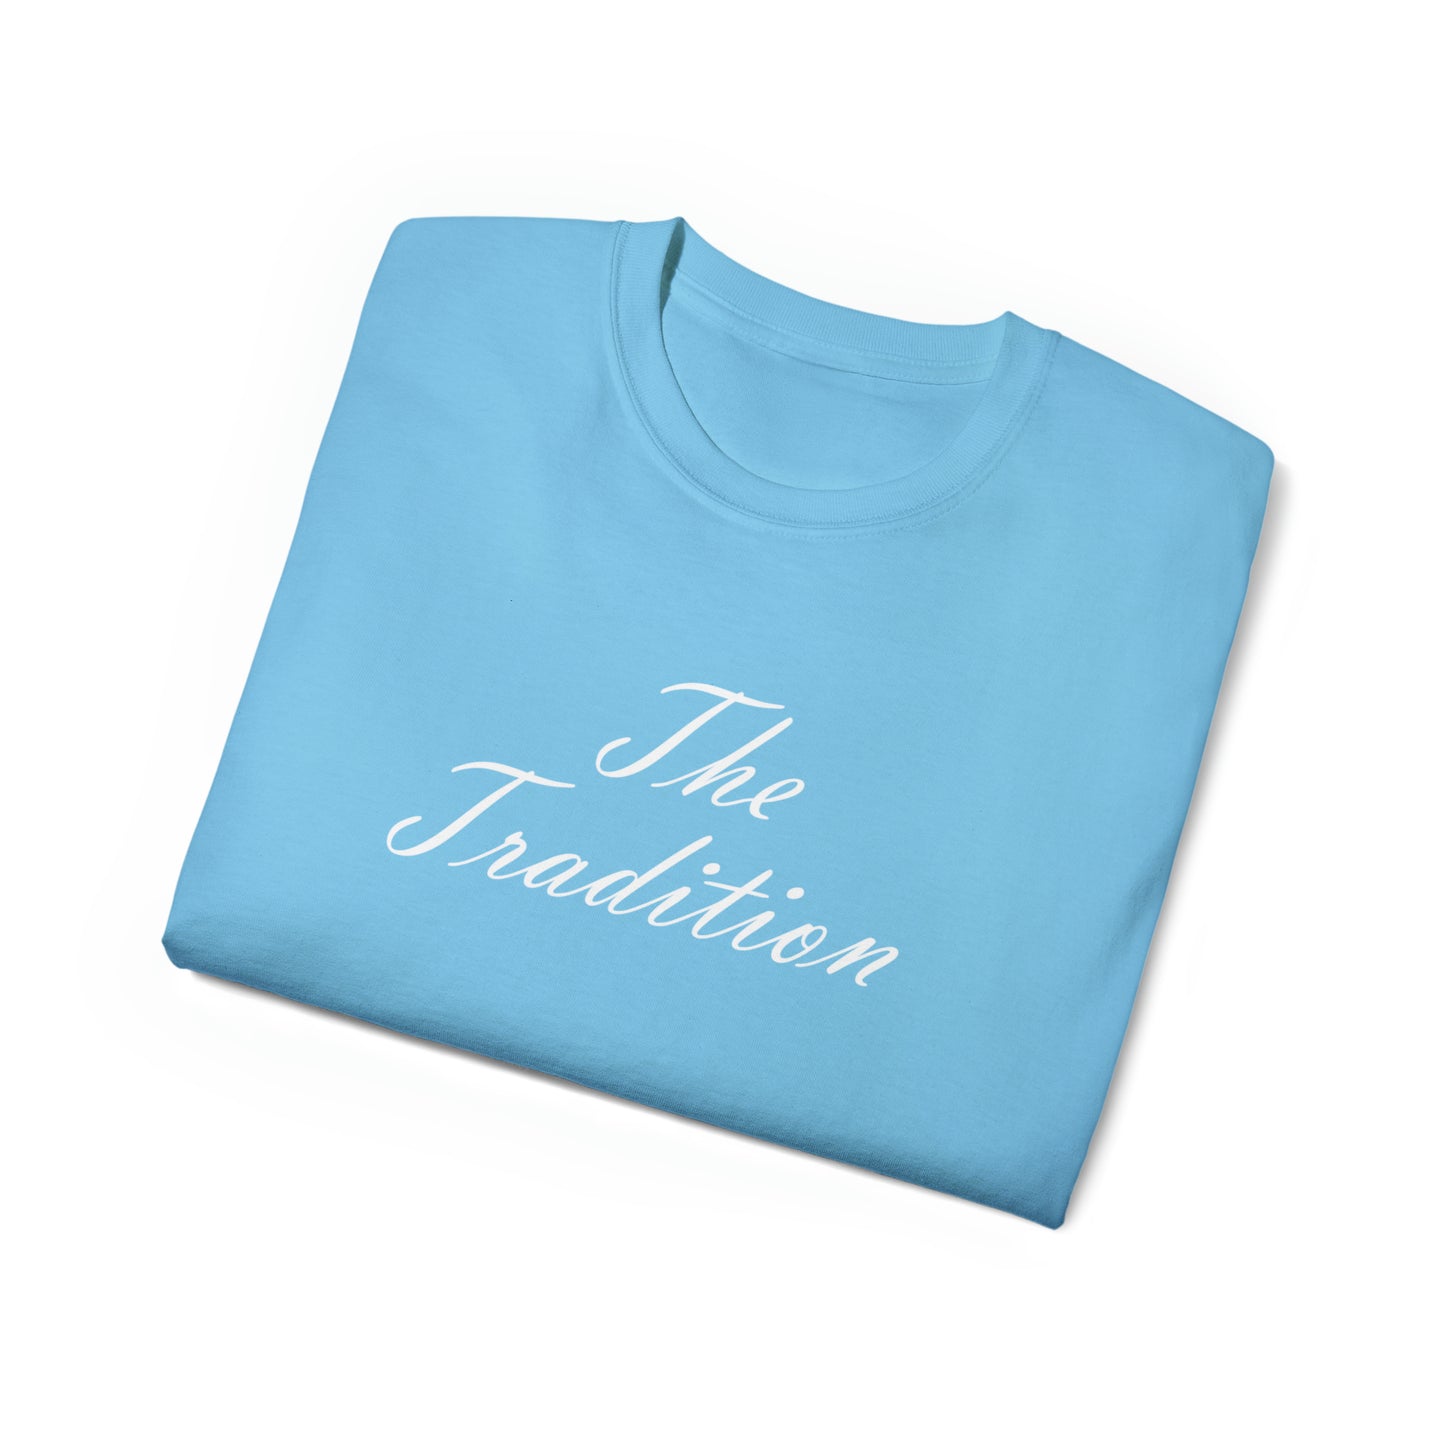 La camiseta de la tradición